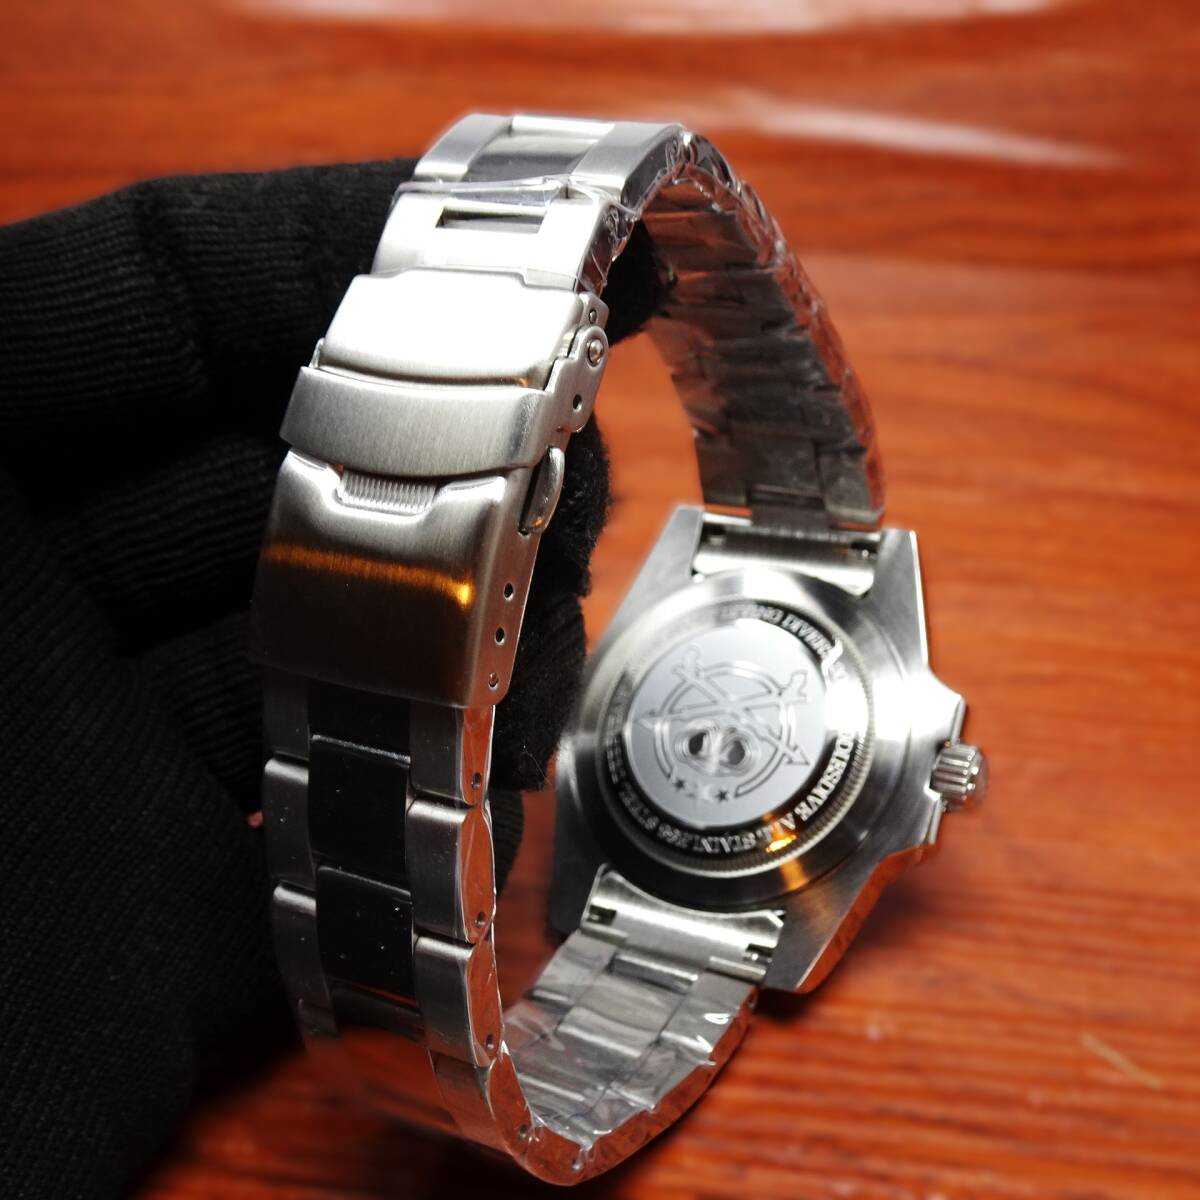 送料無料・新品・ADDIESDIVEブランド・オマージュウォッチ・ミヨタ2115クオーツ式腕時計・316Lフルステンレスモデル・ミネラルガラスの画像6